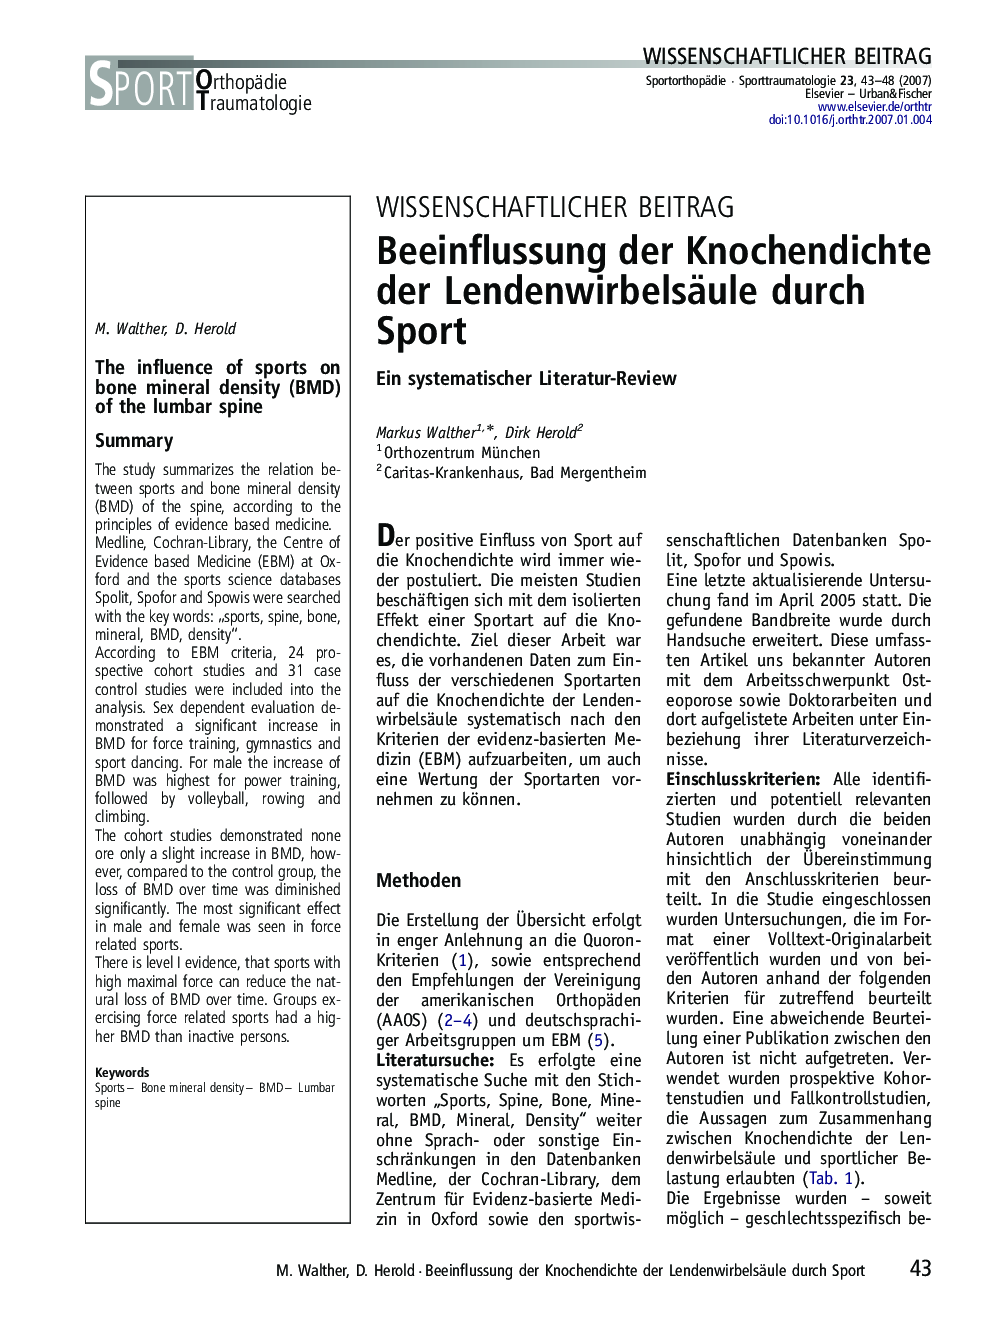 Beeinflussung der Knochendichte der Lendenwirbelsäule durch Sport: Ein systematischer Literatur-Review